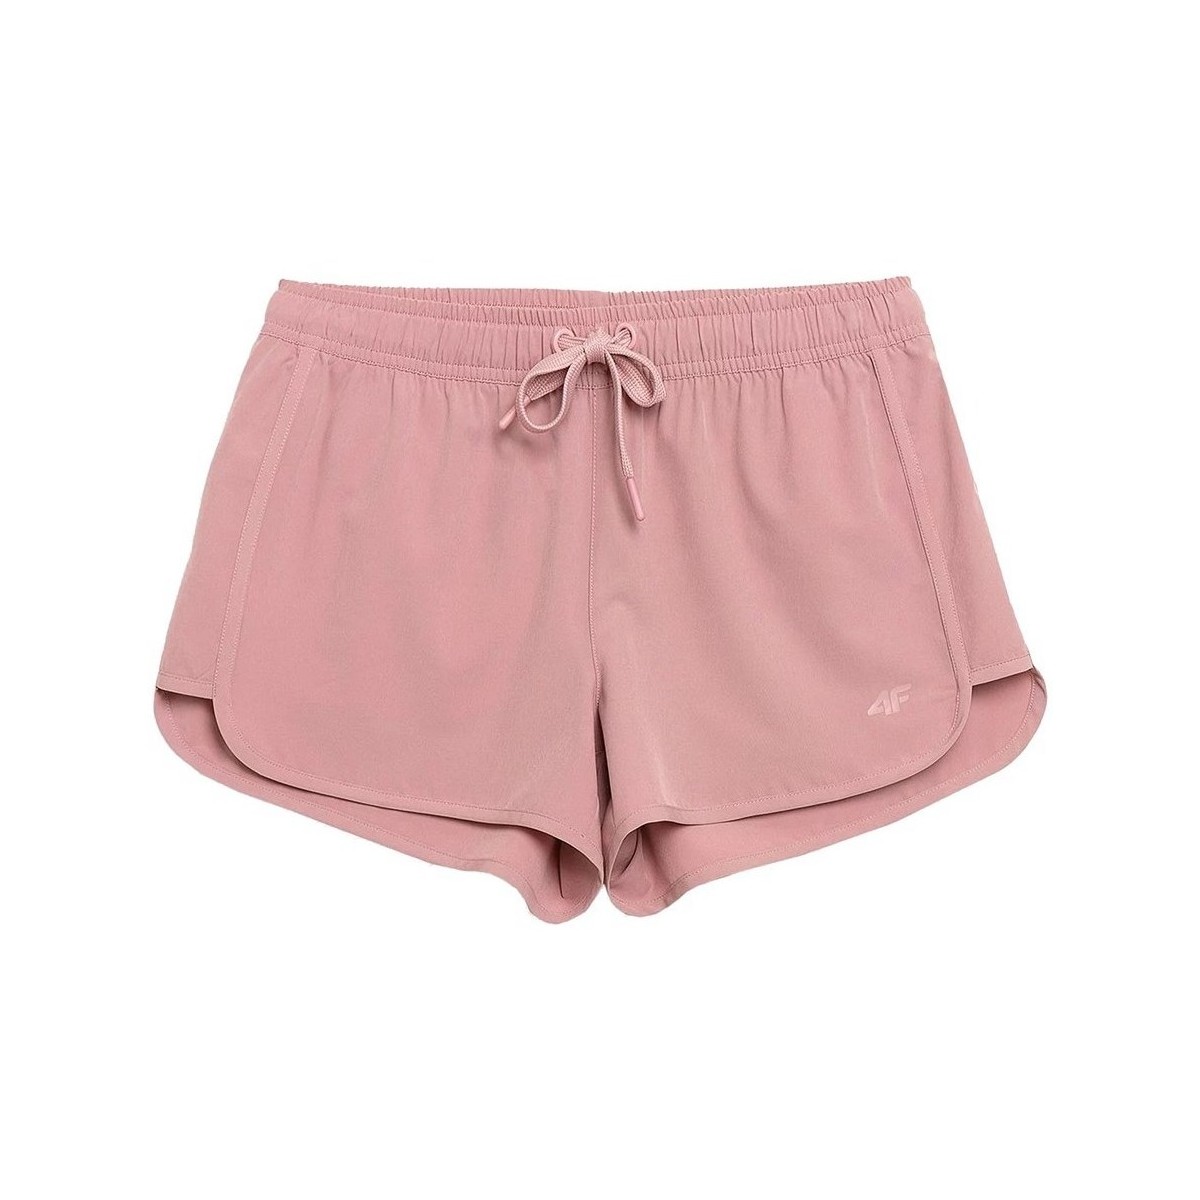 Îmbracaminte Femei Pantaloni trei sferturi 4F SKDT001 roz